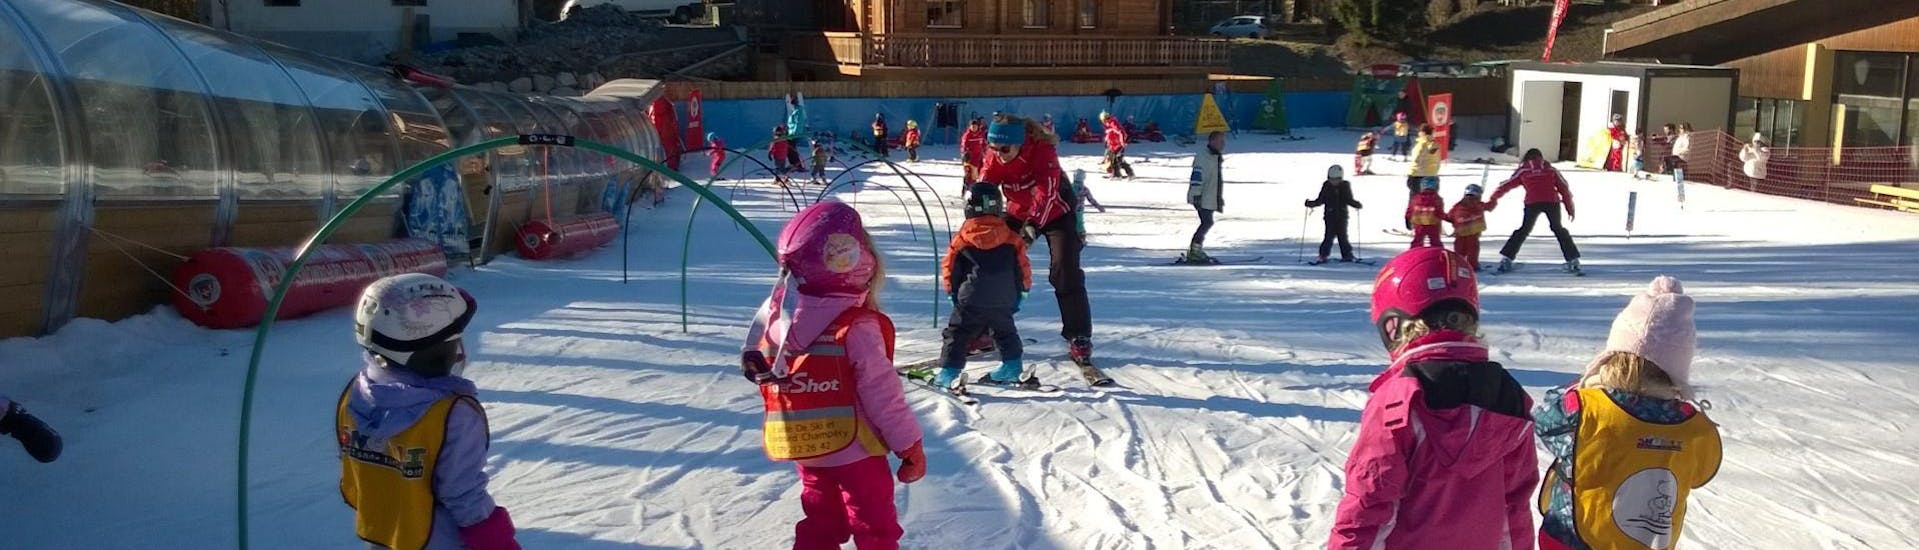 Cours de ski Enfants "Kids Club" (3-7 ans).